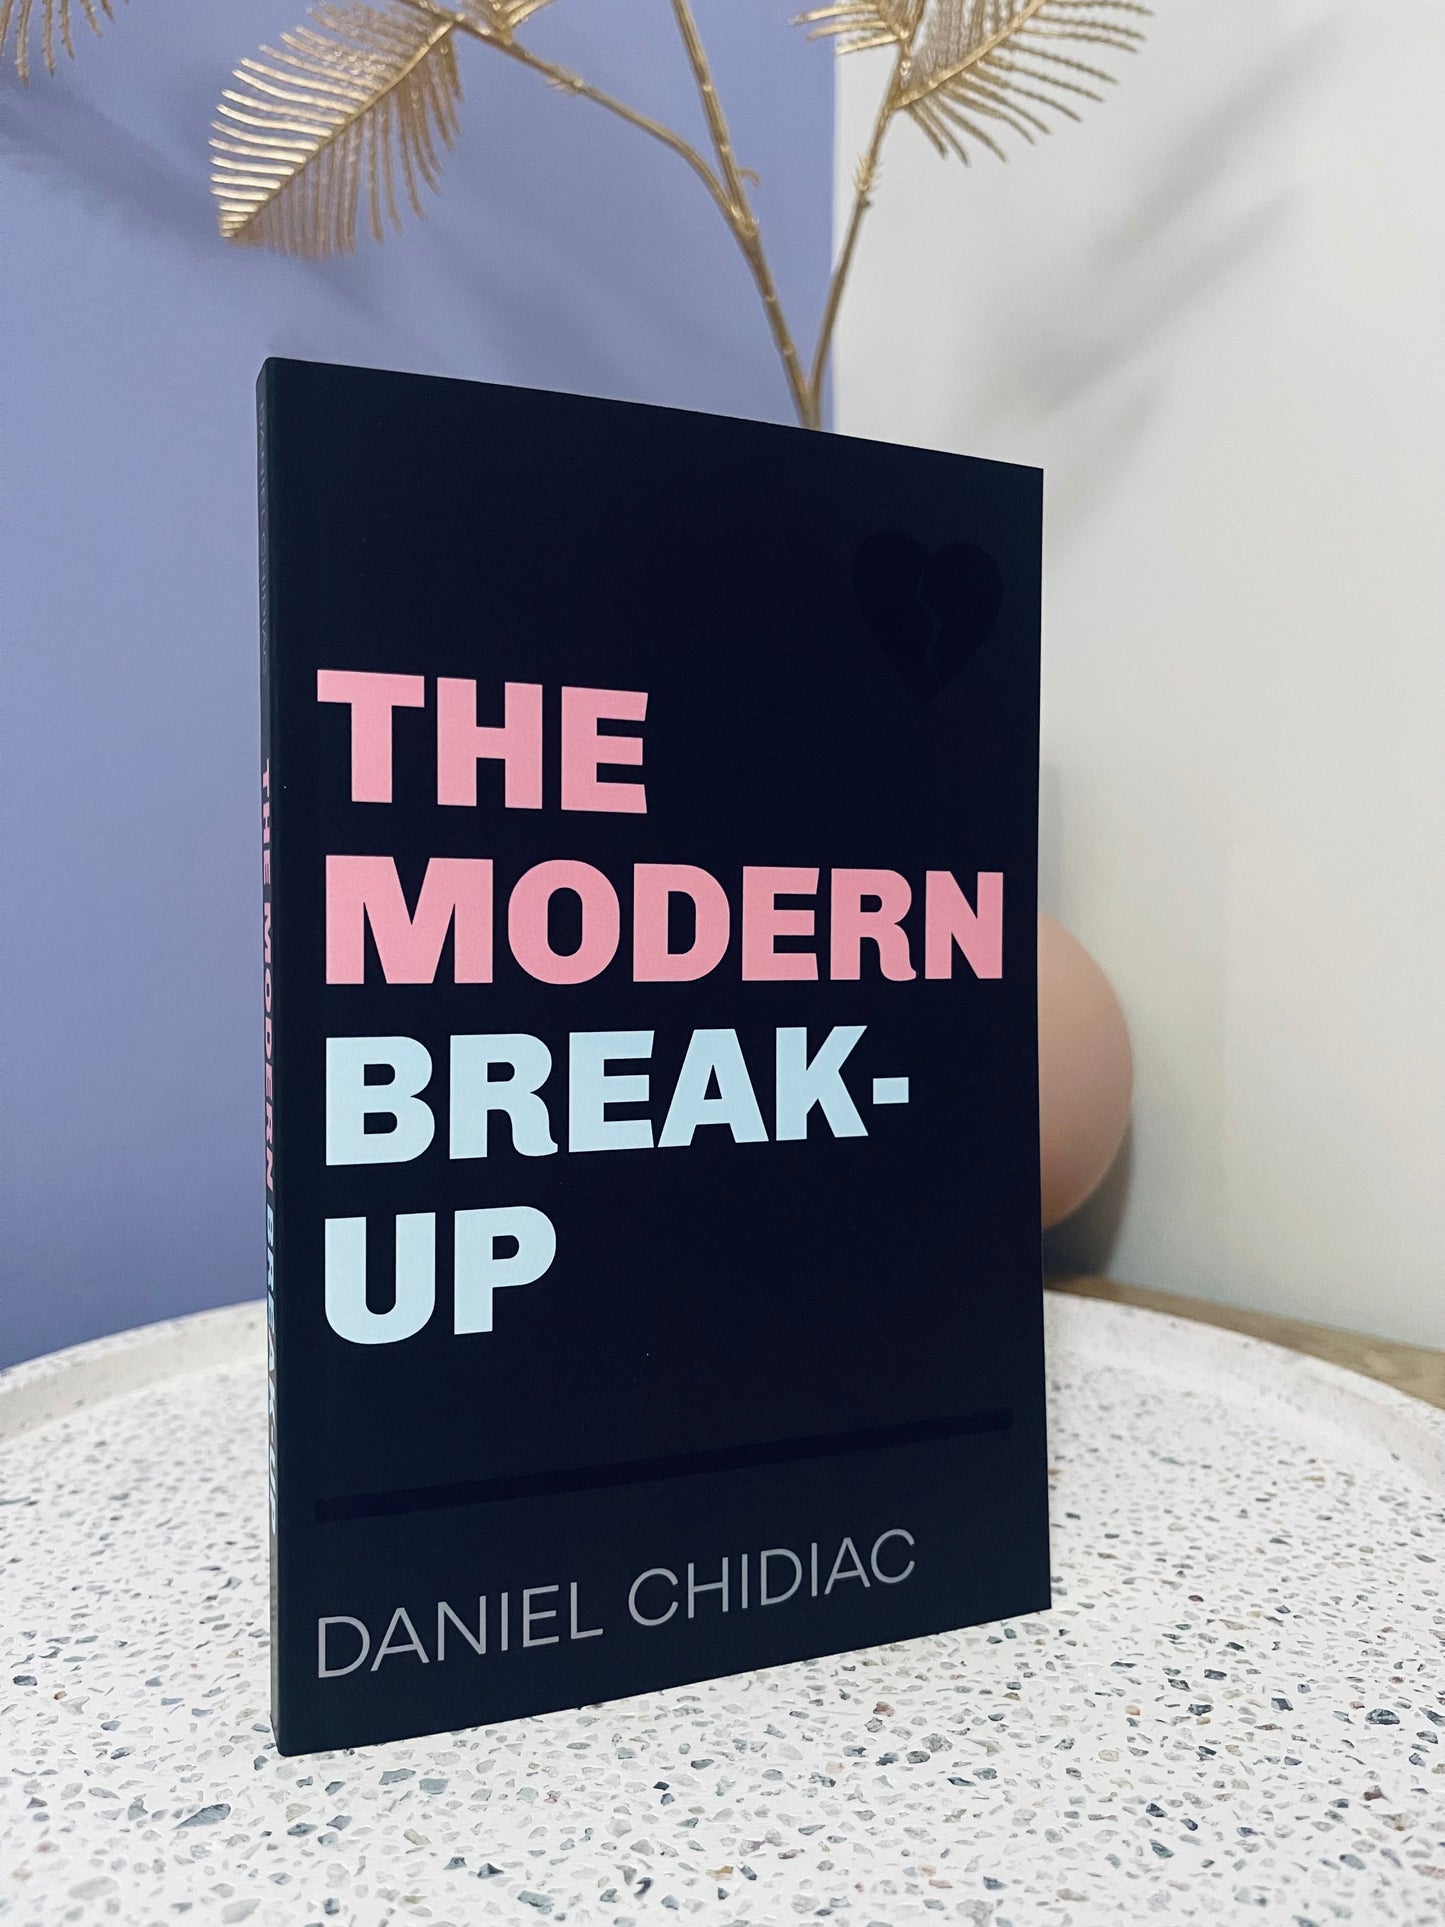 The Modern Break-Up by Daniel Chidiac